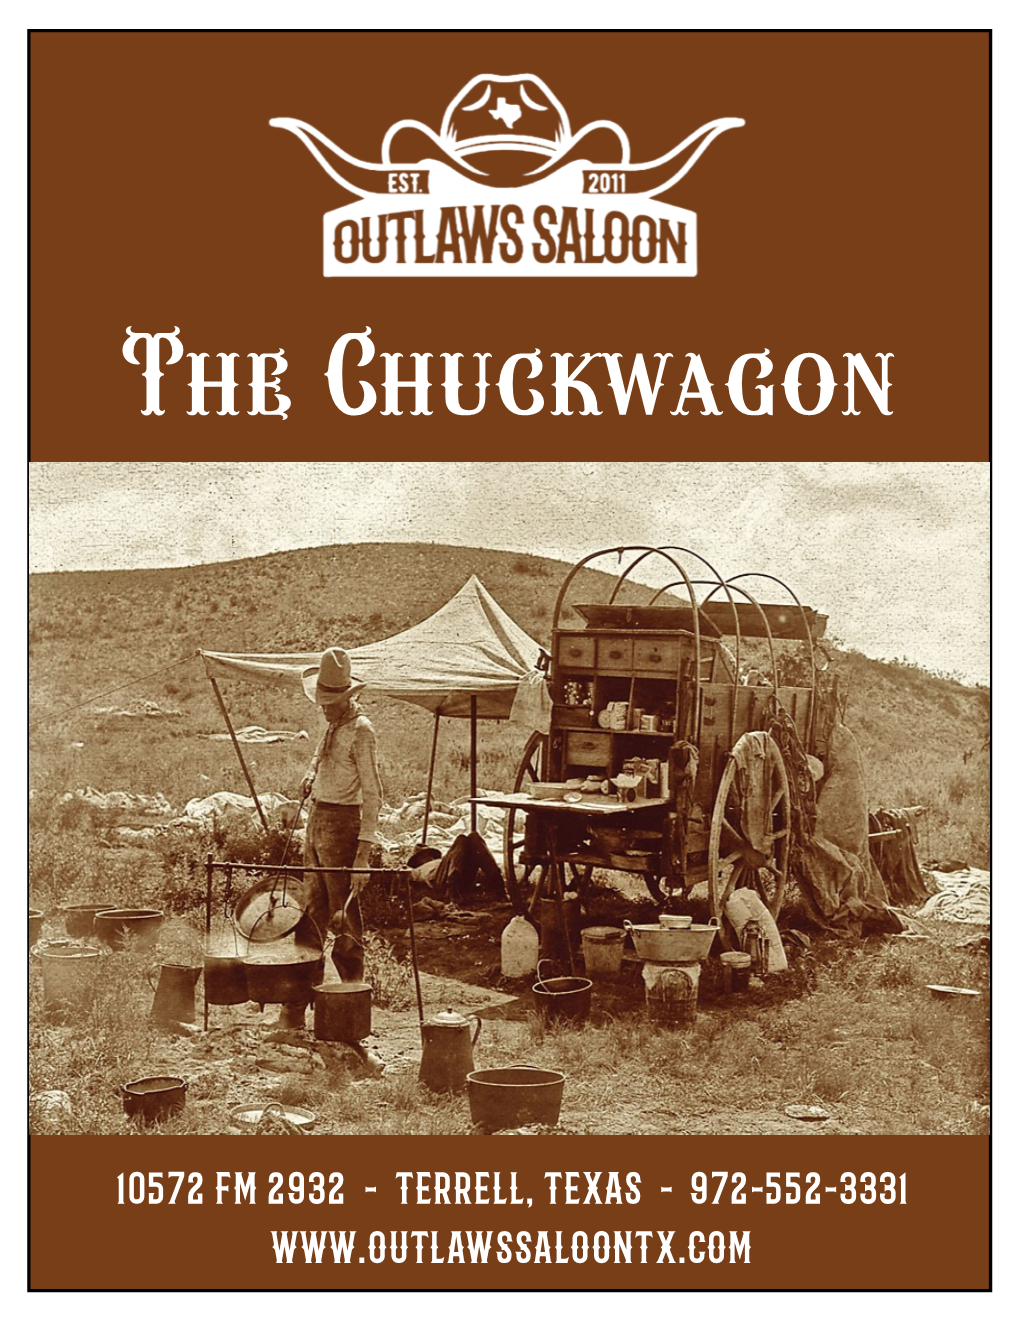 The Chuckwagon